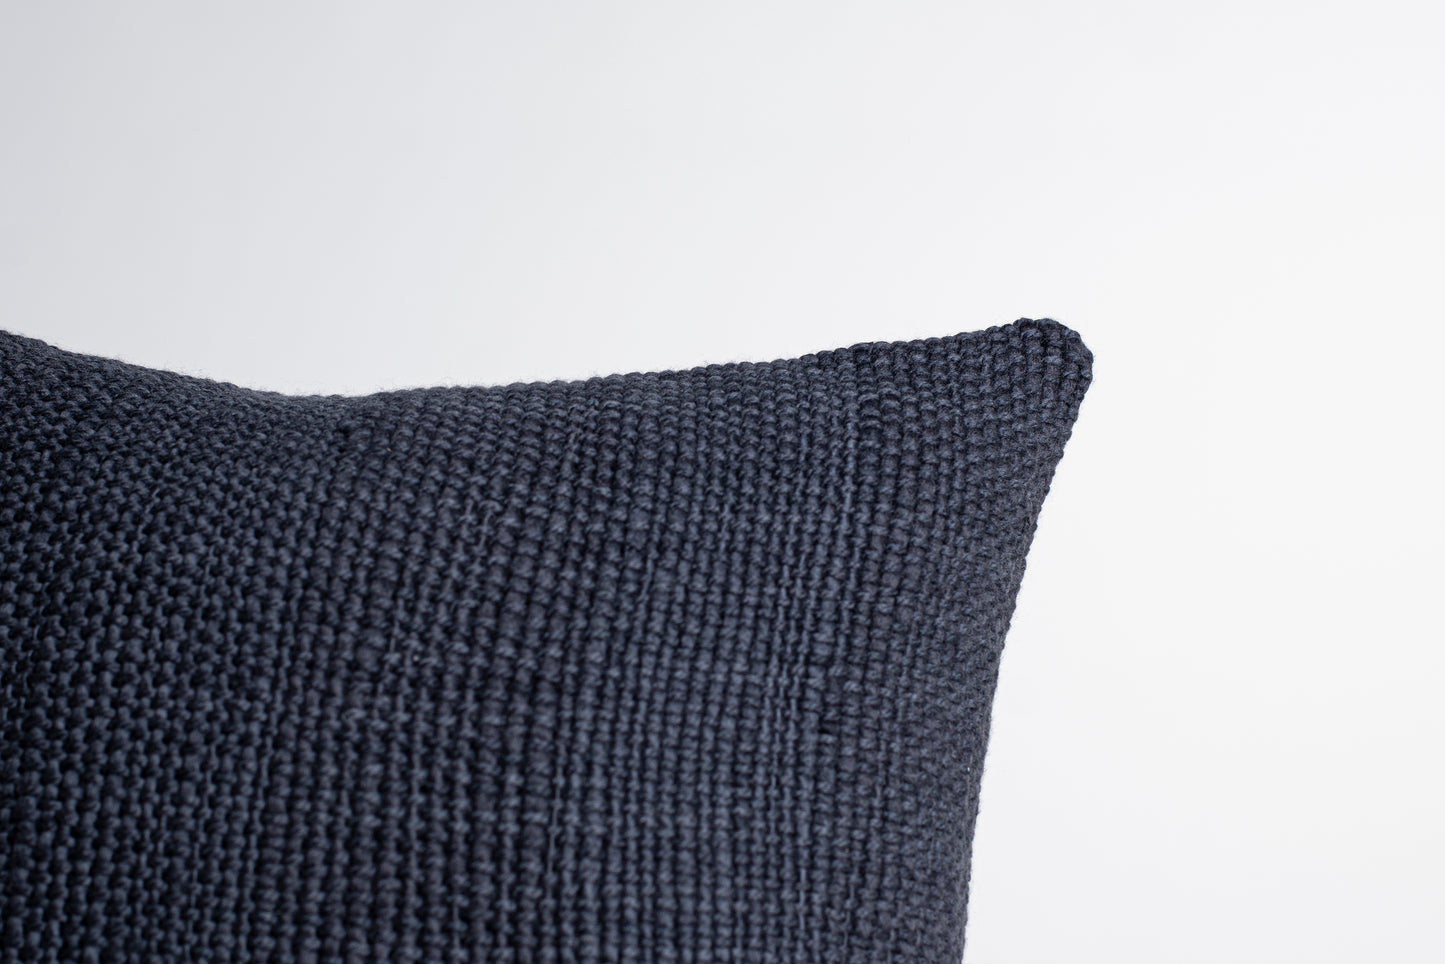 Sofa Cushion Case in Neutral Dark Grey Niebla 18x18